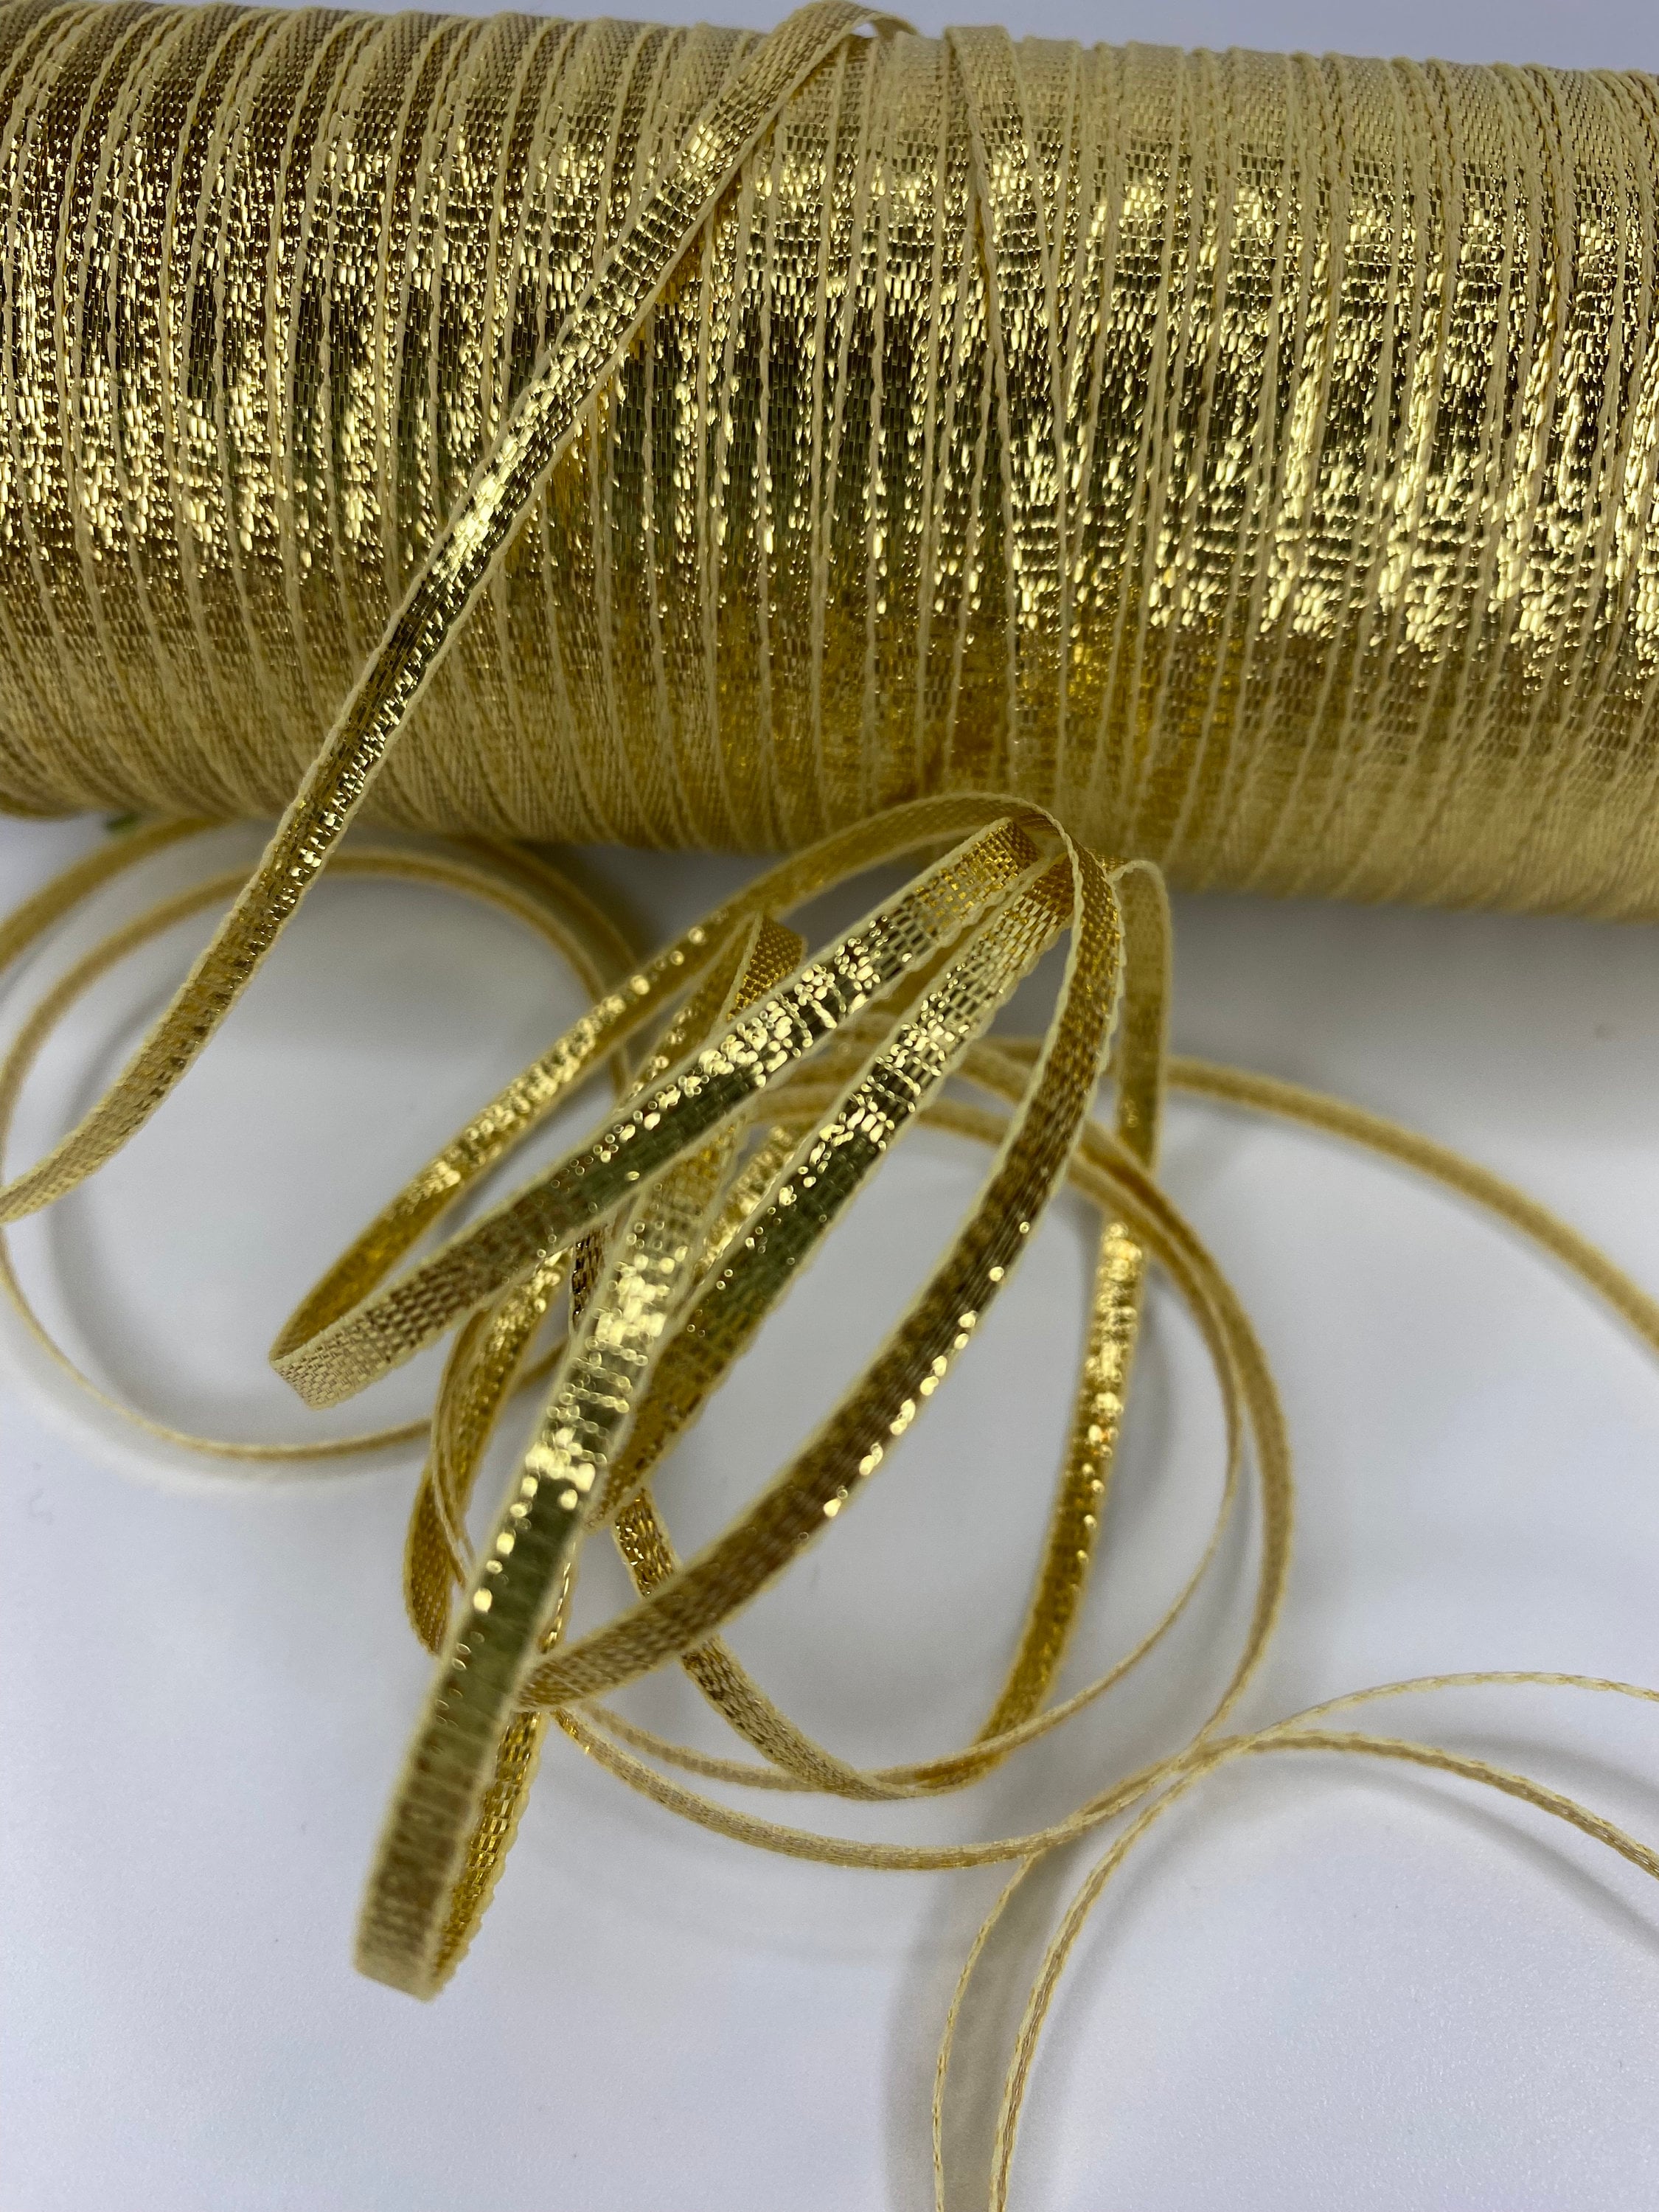 Gold trim by yard - Metallic gold picot edging - Synthetic gold trimming -  Gold metallic gimp 15mm- Gold edging - Metallic border…